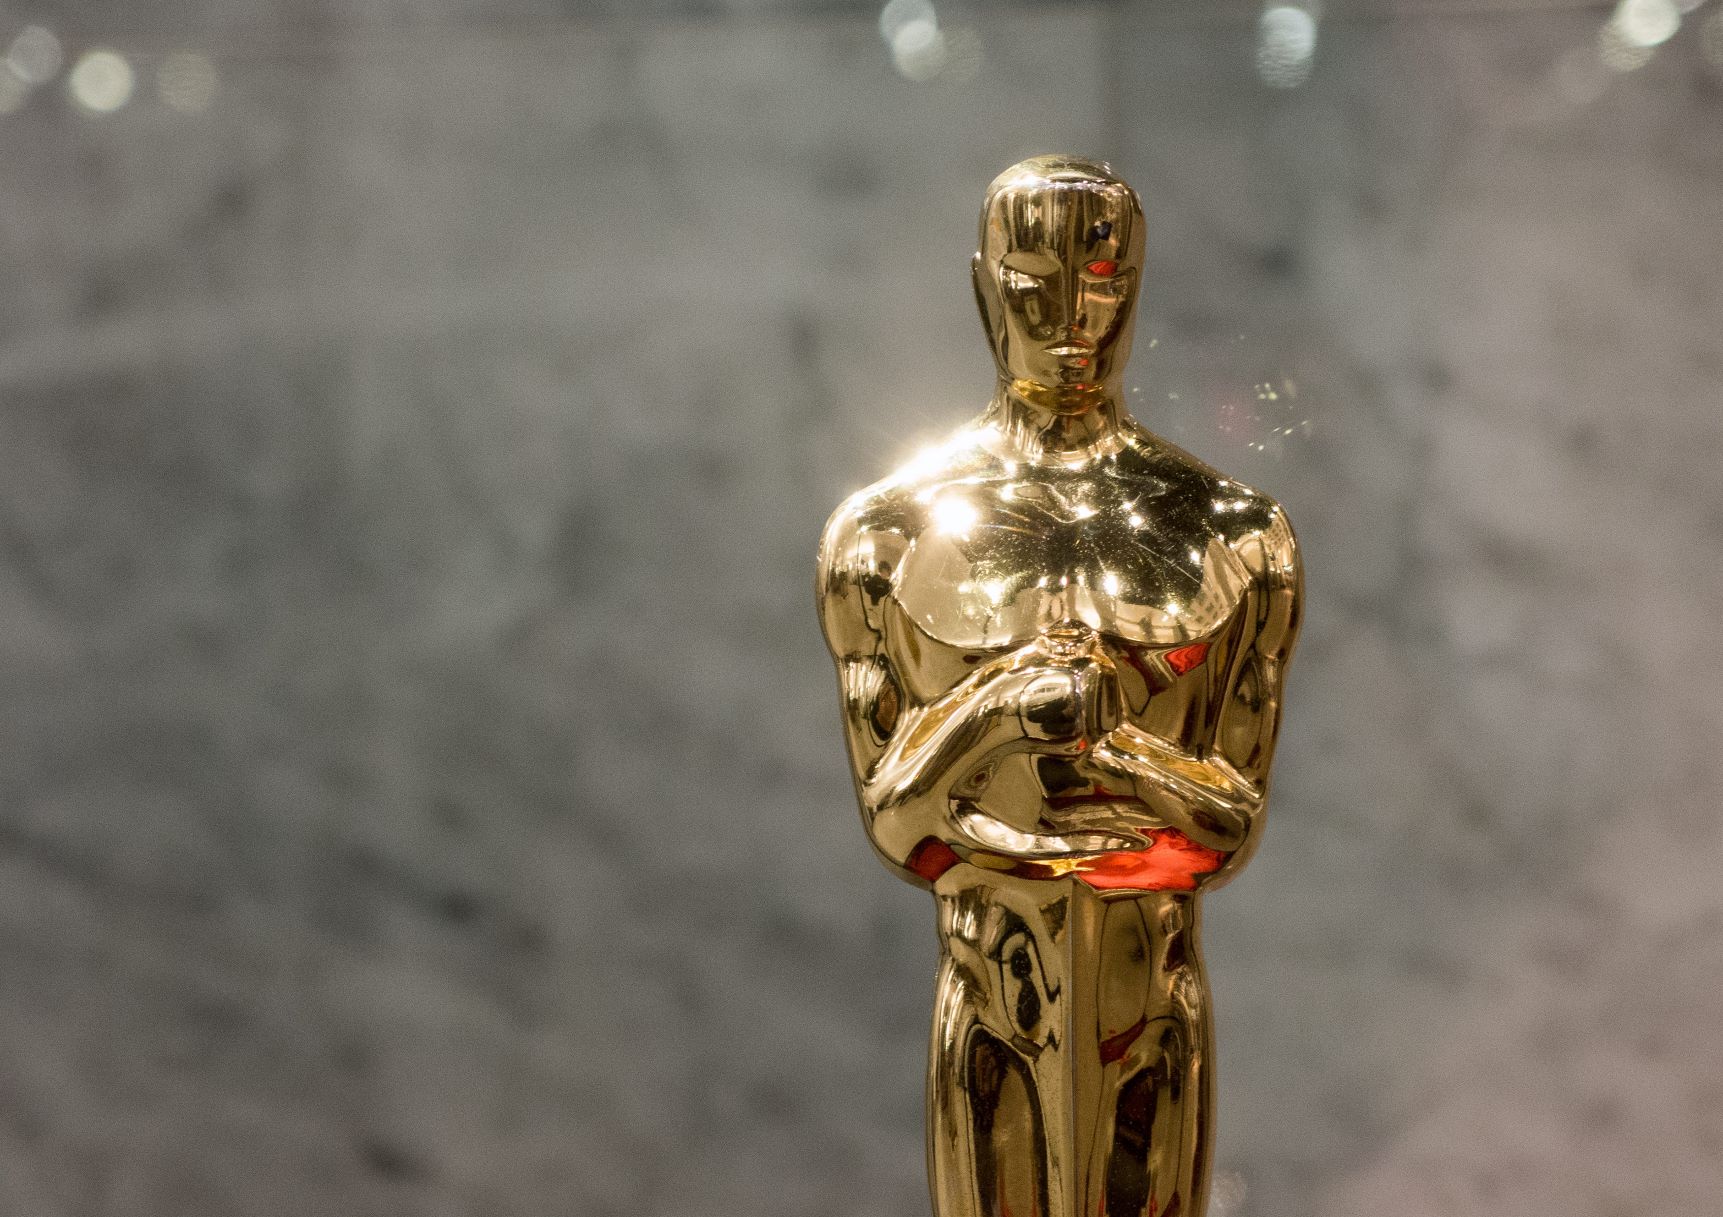 Társadalmi érzékenyítés és látványmozi az Oscar-díjazottak között